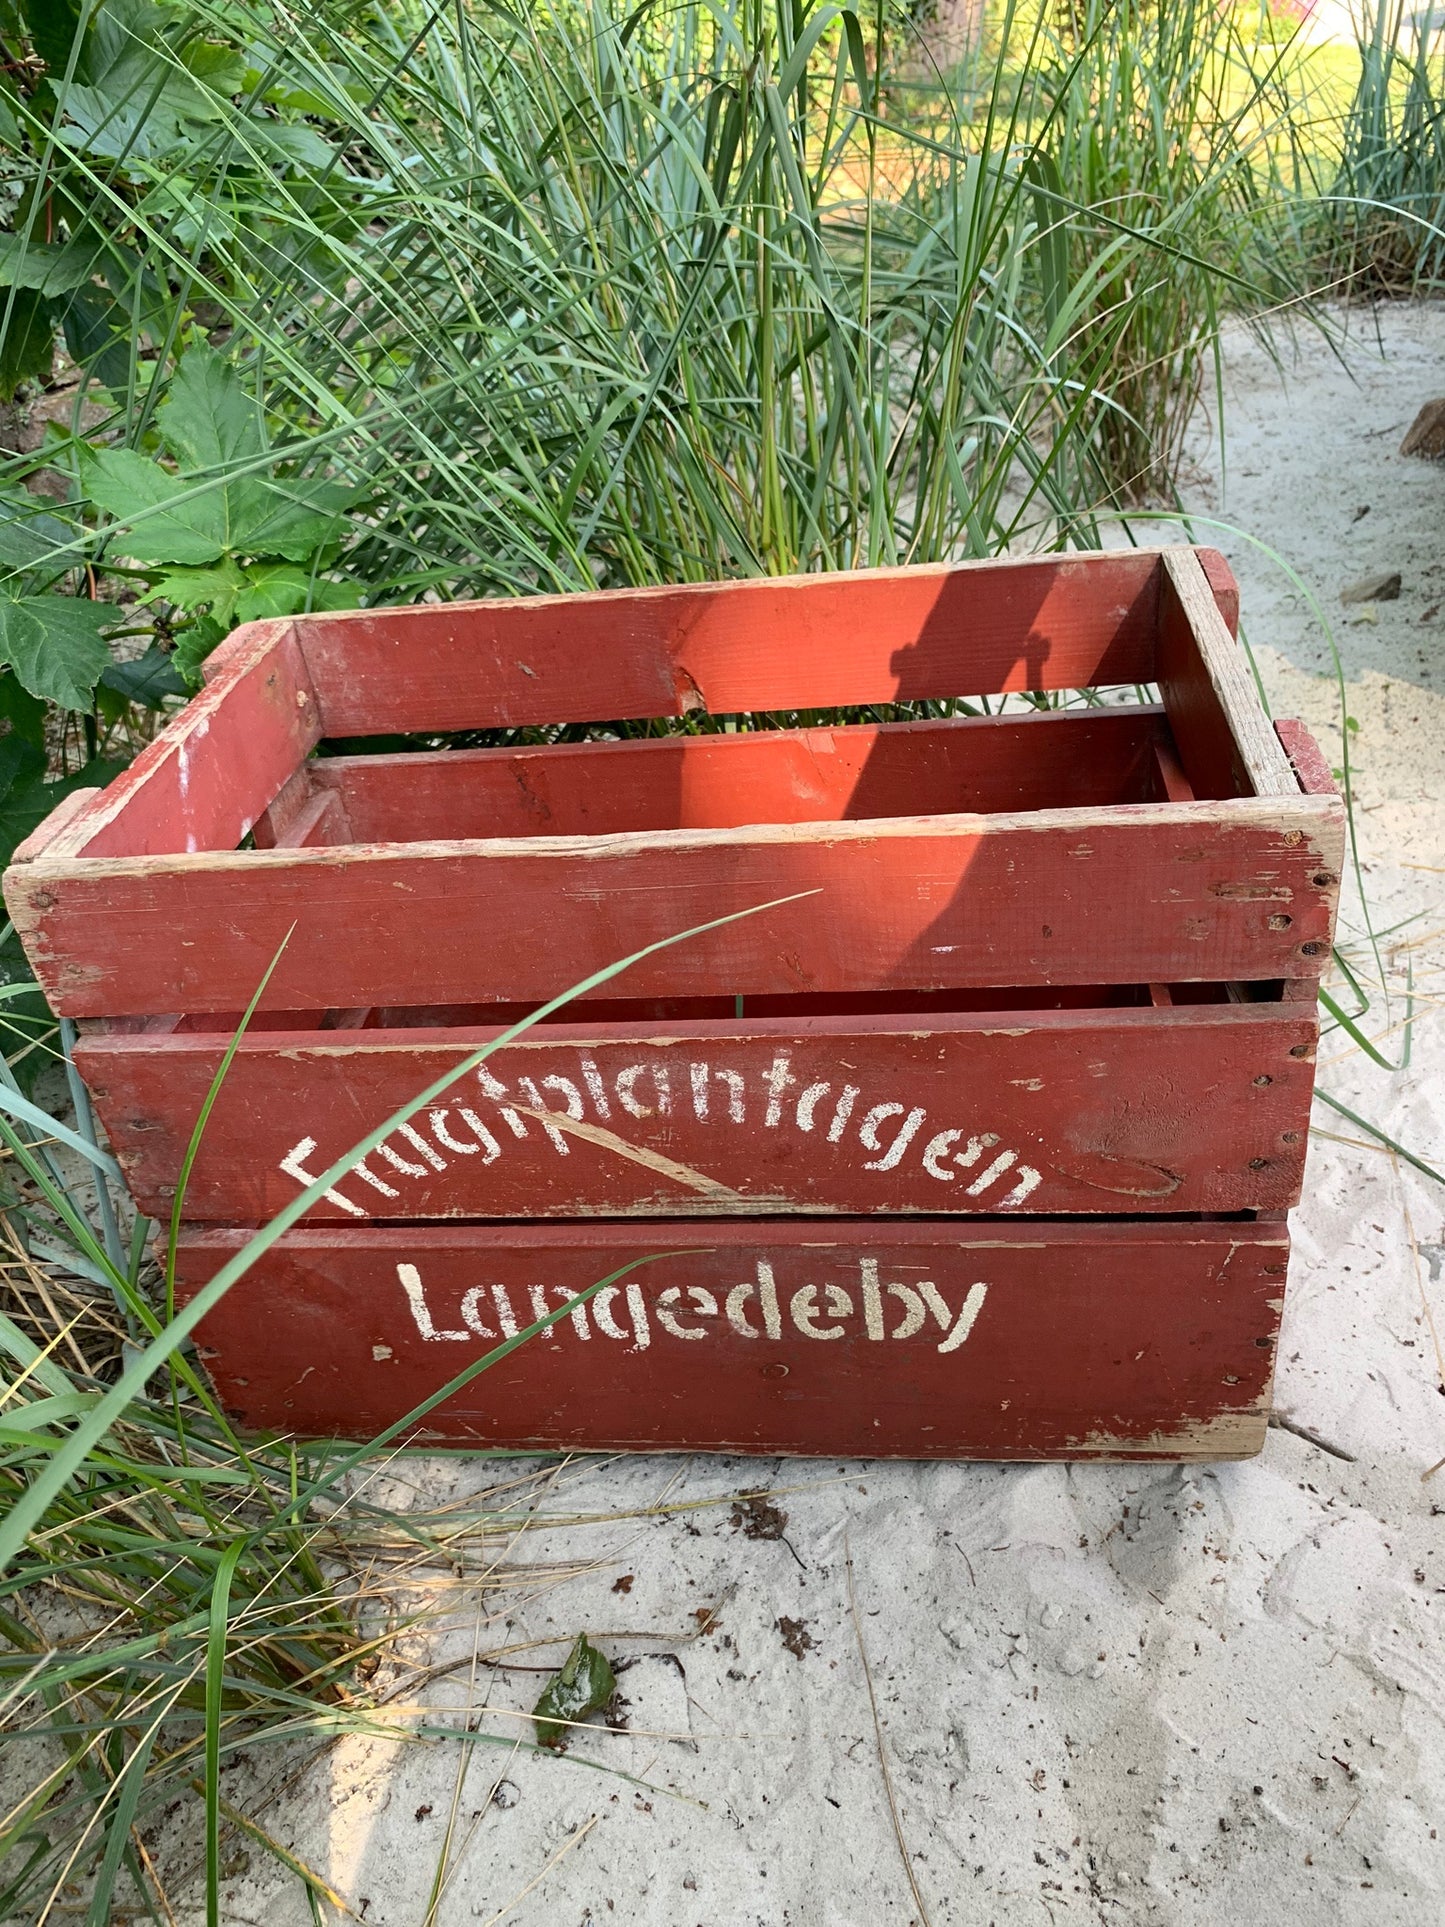 Schöne alte Kiste aus Obstgärten in Langedeby